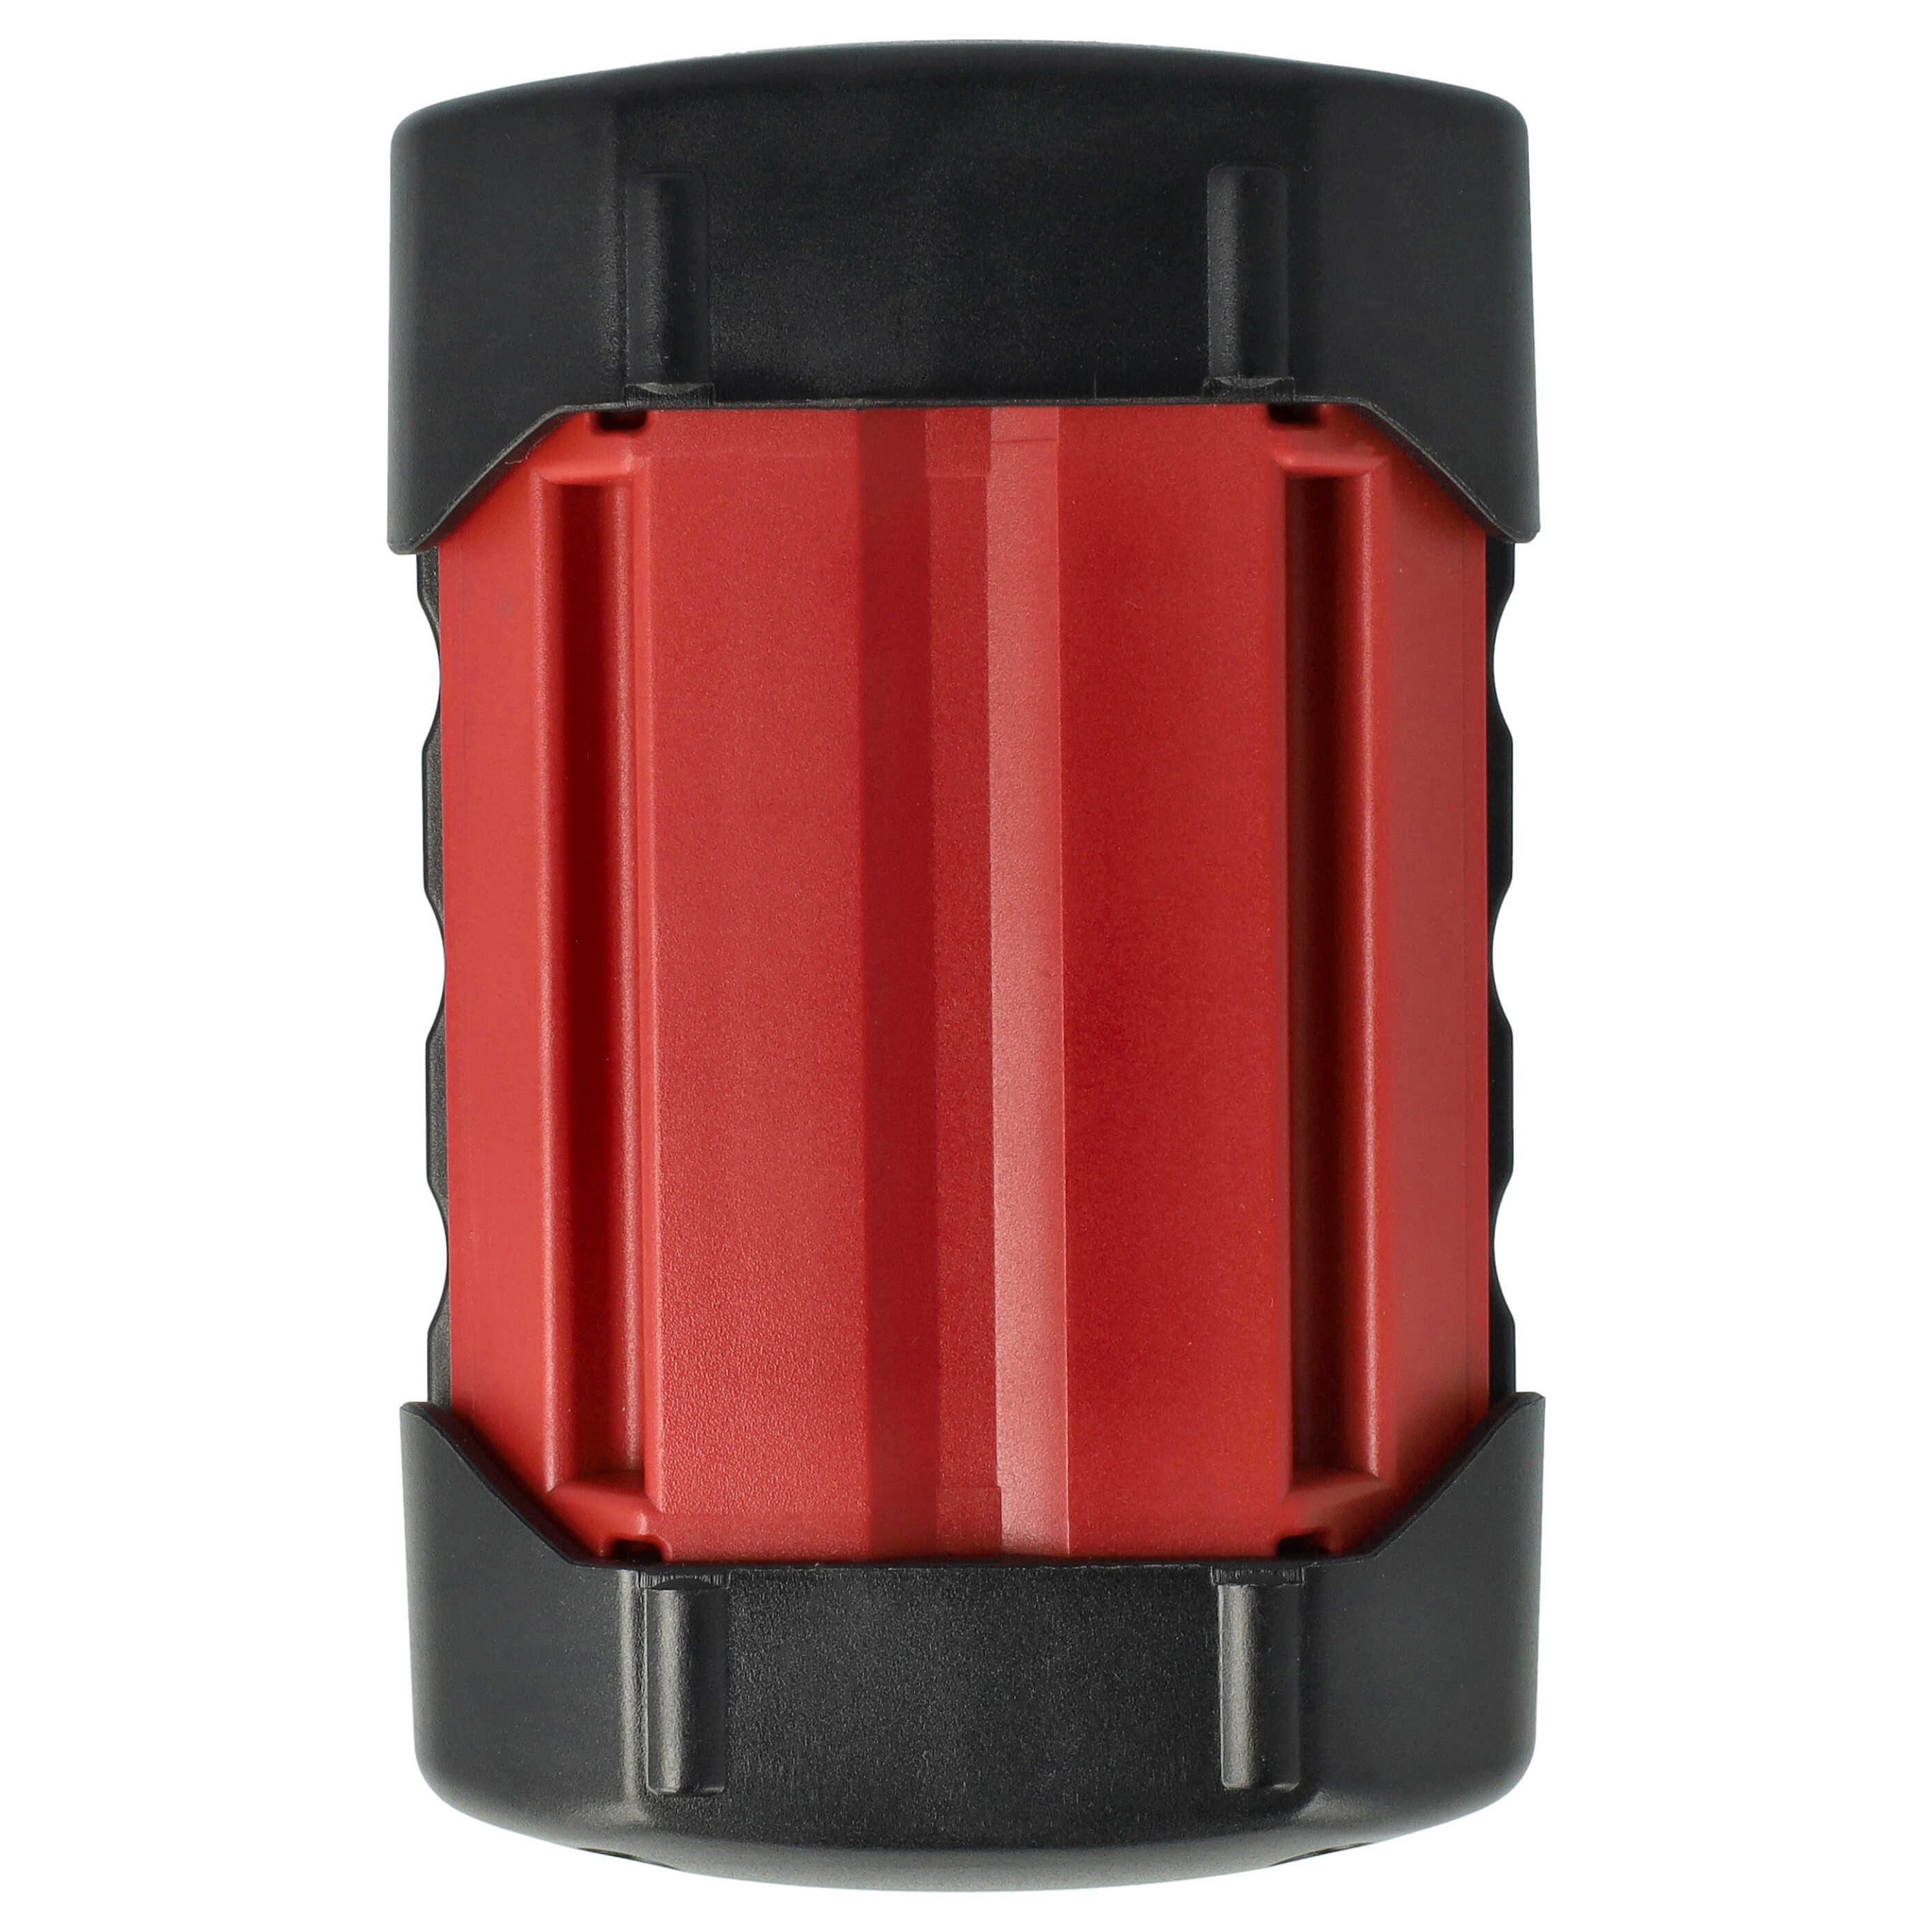 Akumulator do robota koszącego zamiennik Bosch 1600A0022N - 3000 mAh 36 V Li-Ion, czarny / czerwony